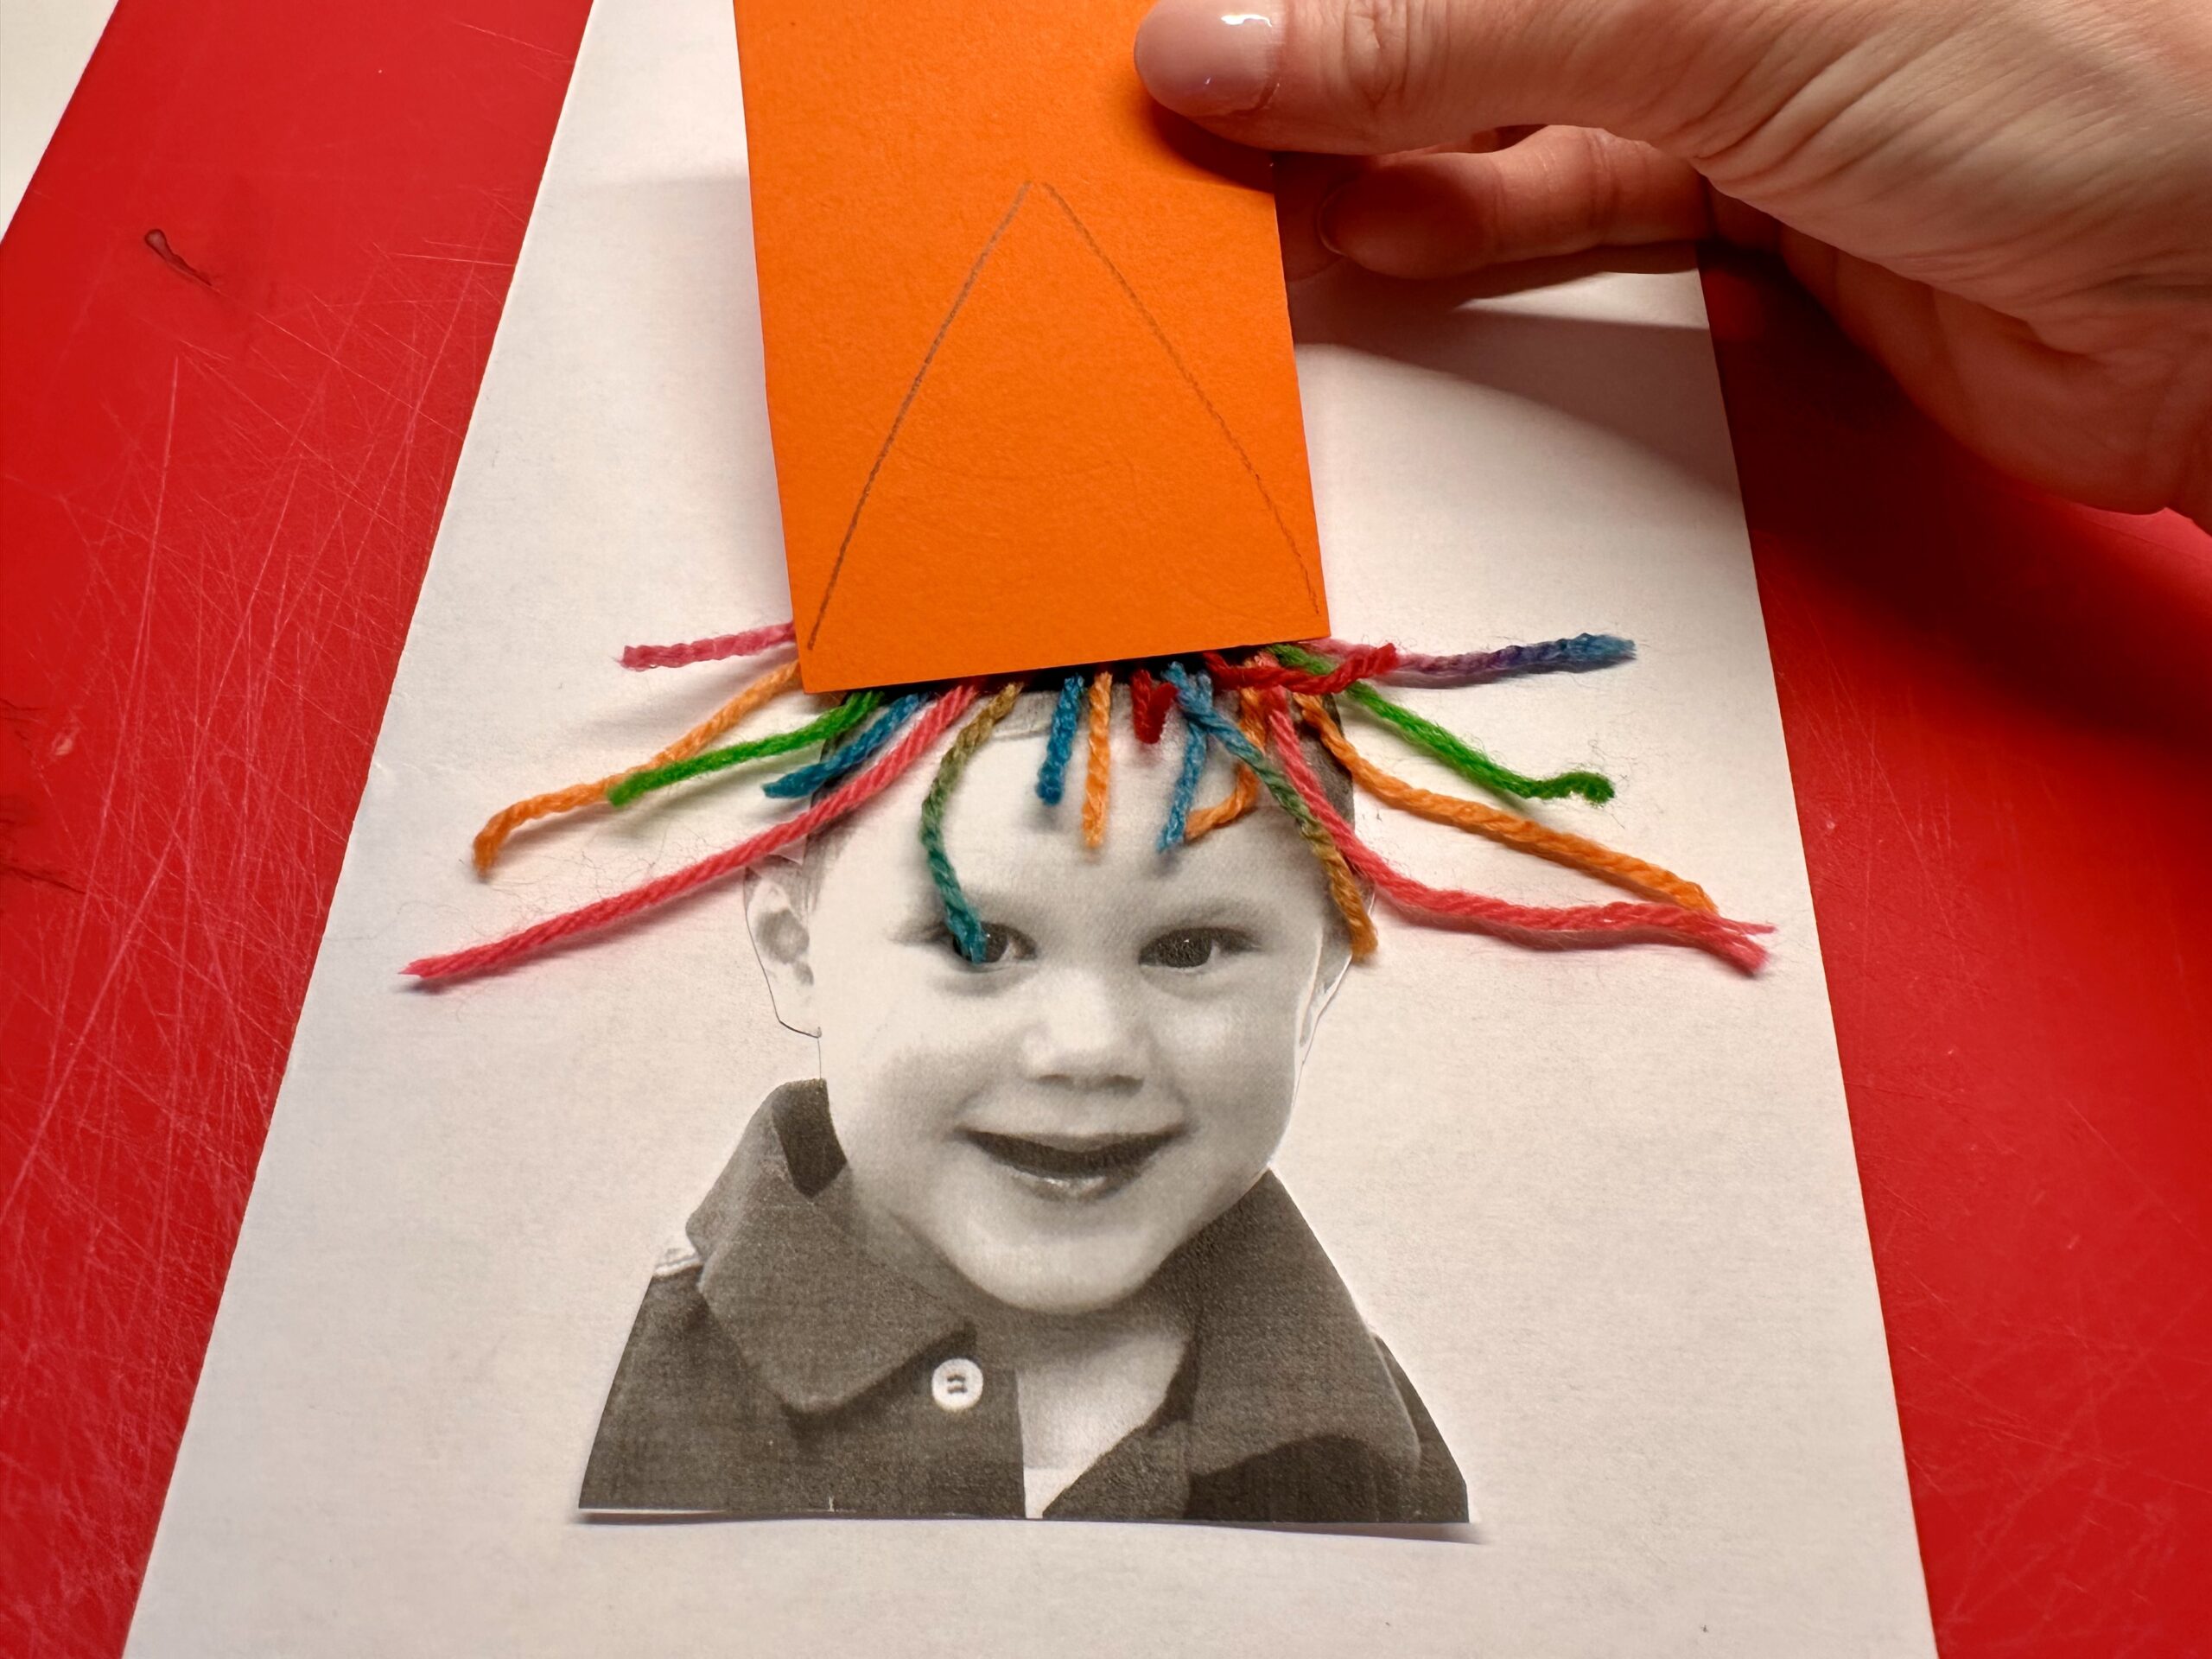 Bild zum Schritt 10 für das Bastel- und DIY-Abenteuer für Kinder: 'Malt einen lustigen Hut auf einen Papierrest auf. Kontrolliert ob...'